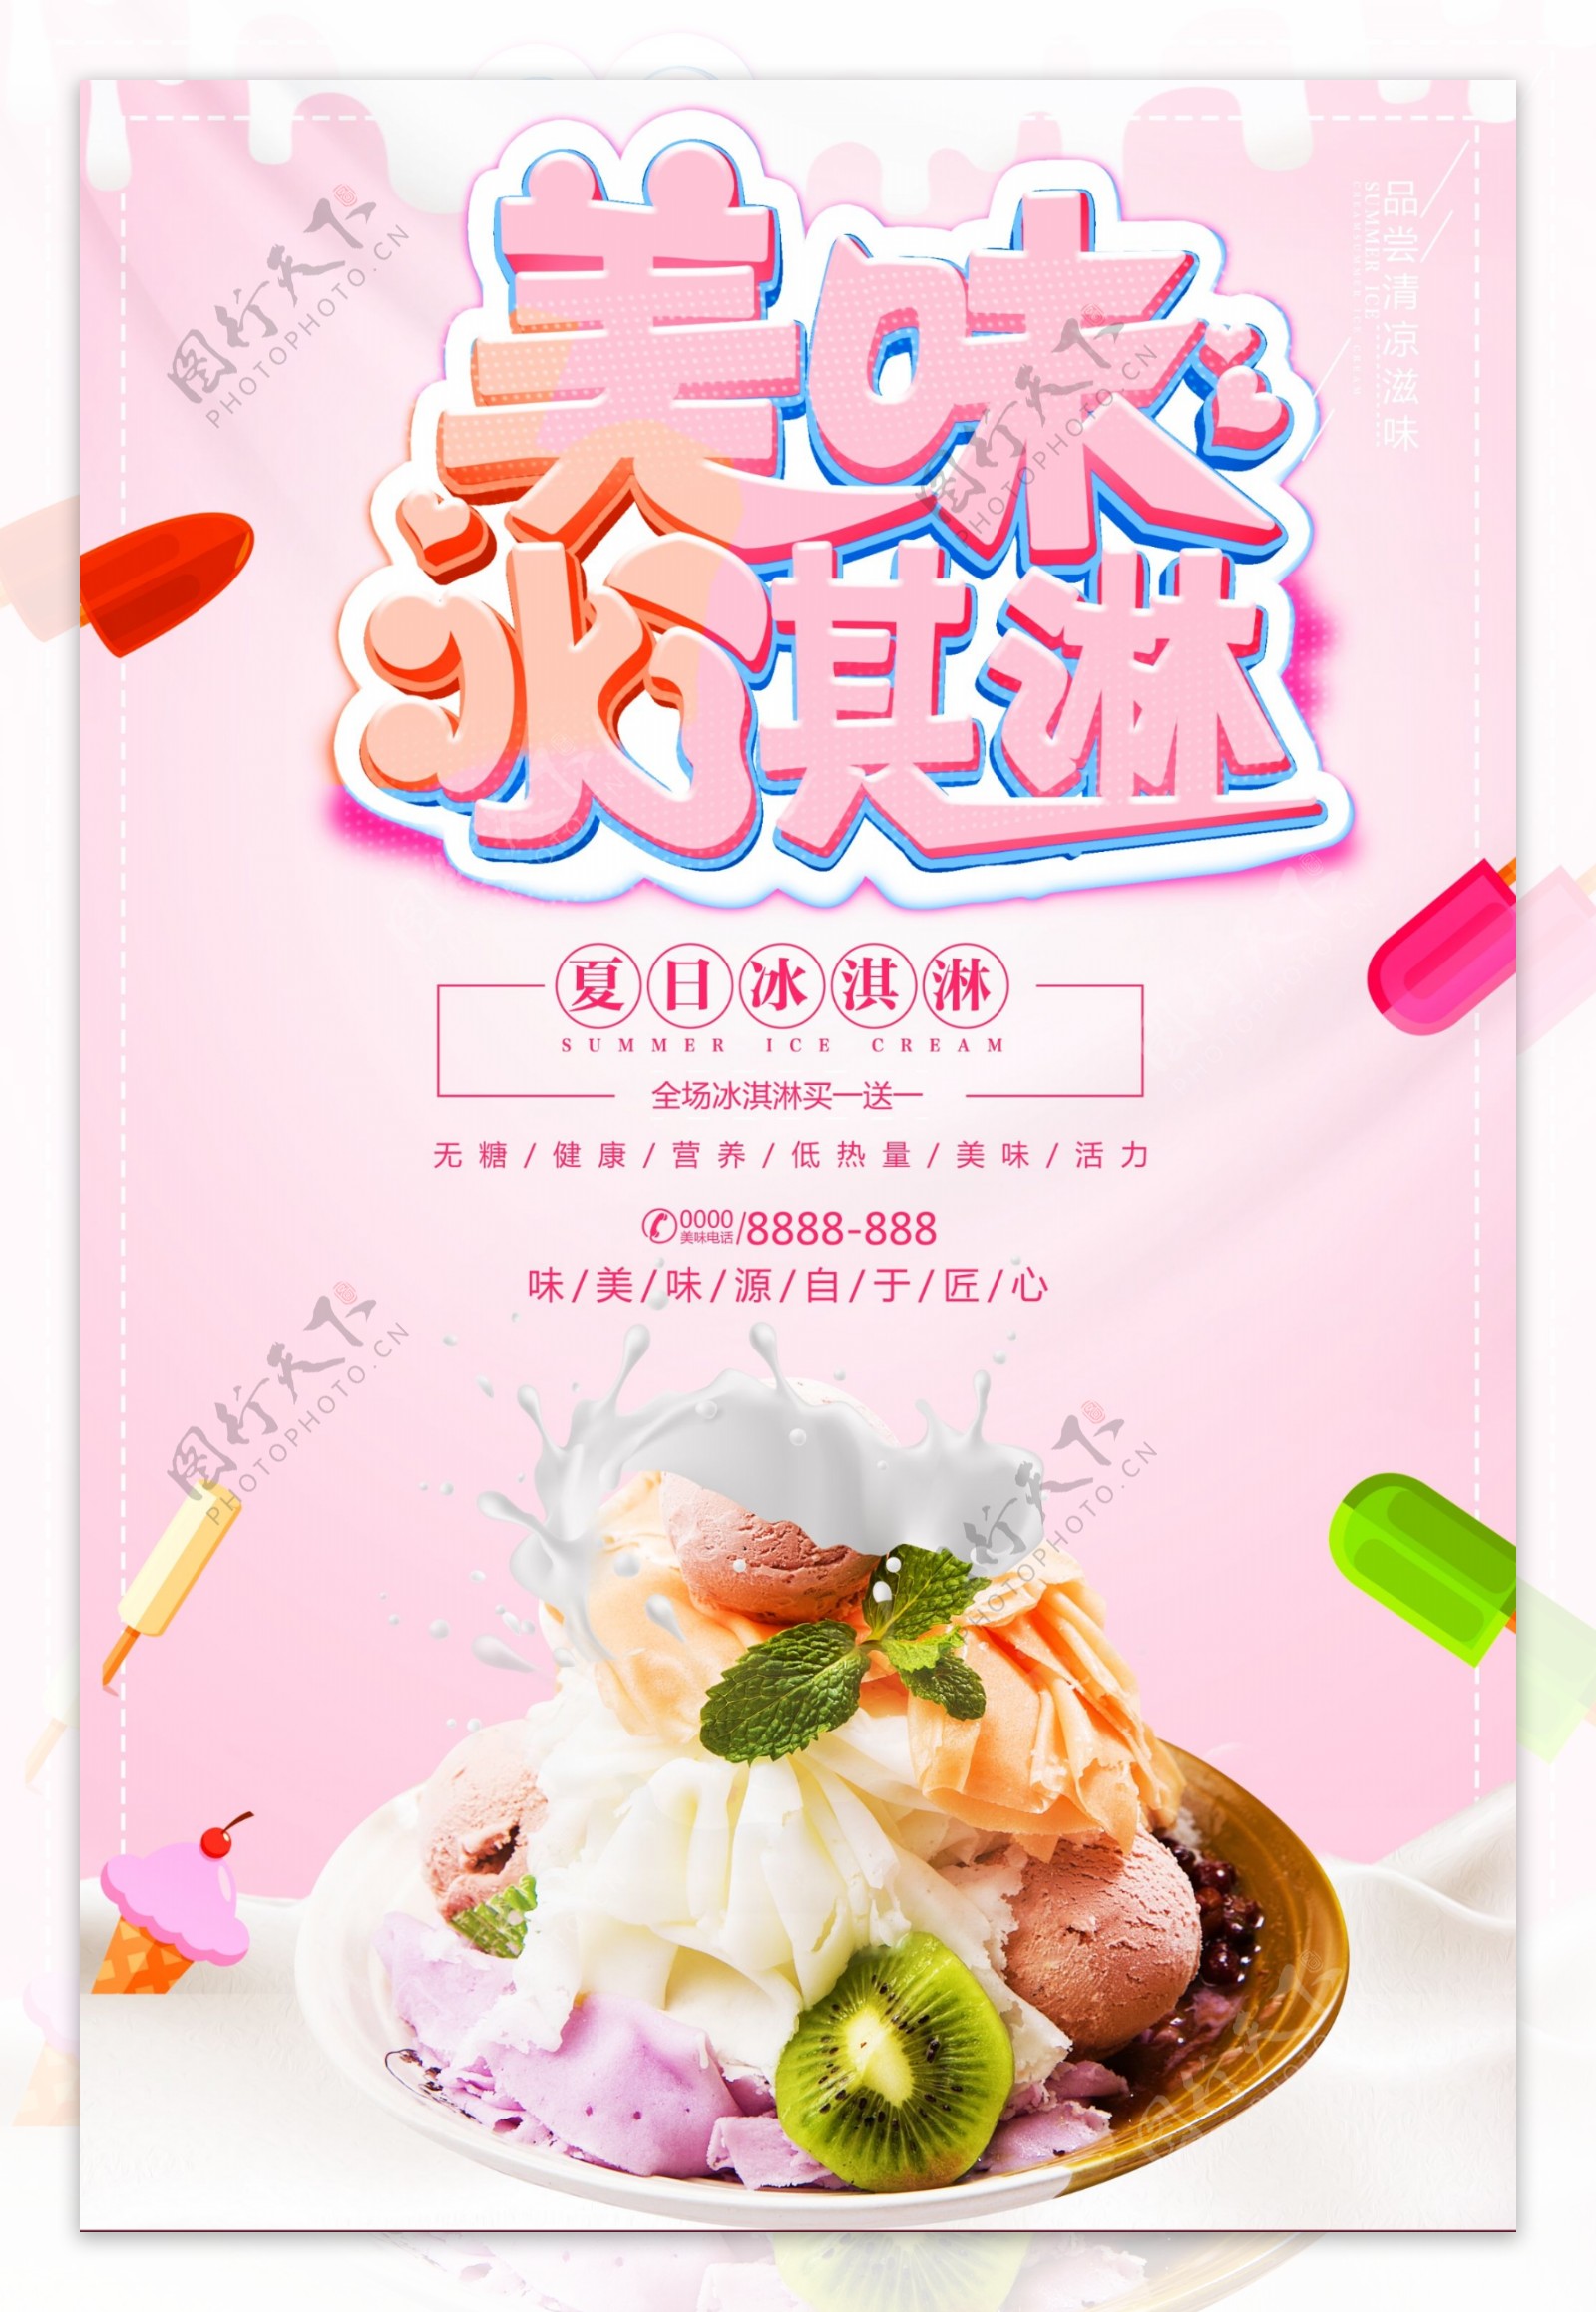 夏日冰淇淋盛夏新品饮品促销海报